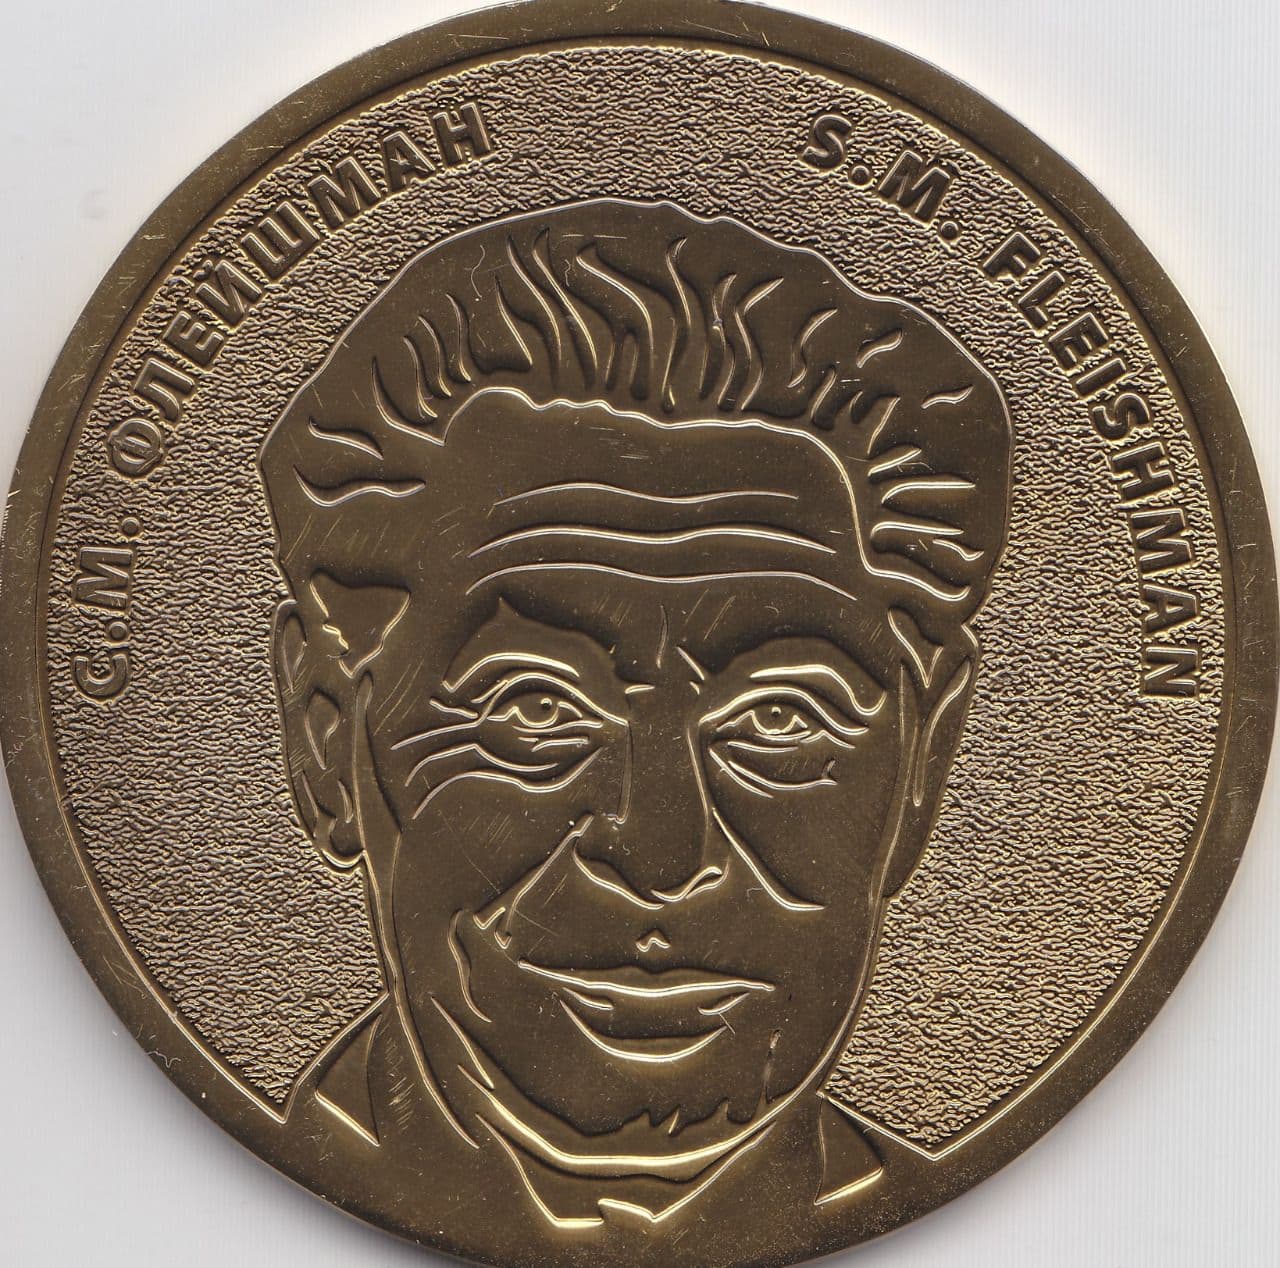 Ученые Казгидромета получили высокую оценку Селевой ассоциации – медаль Флейшмана